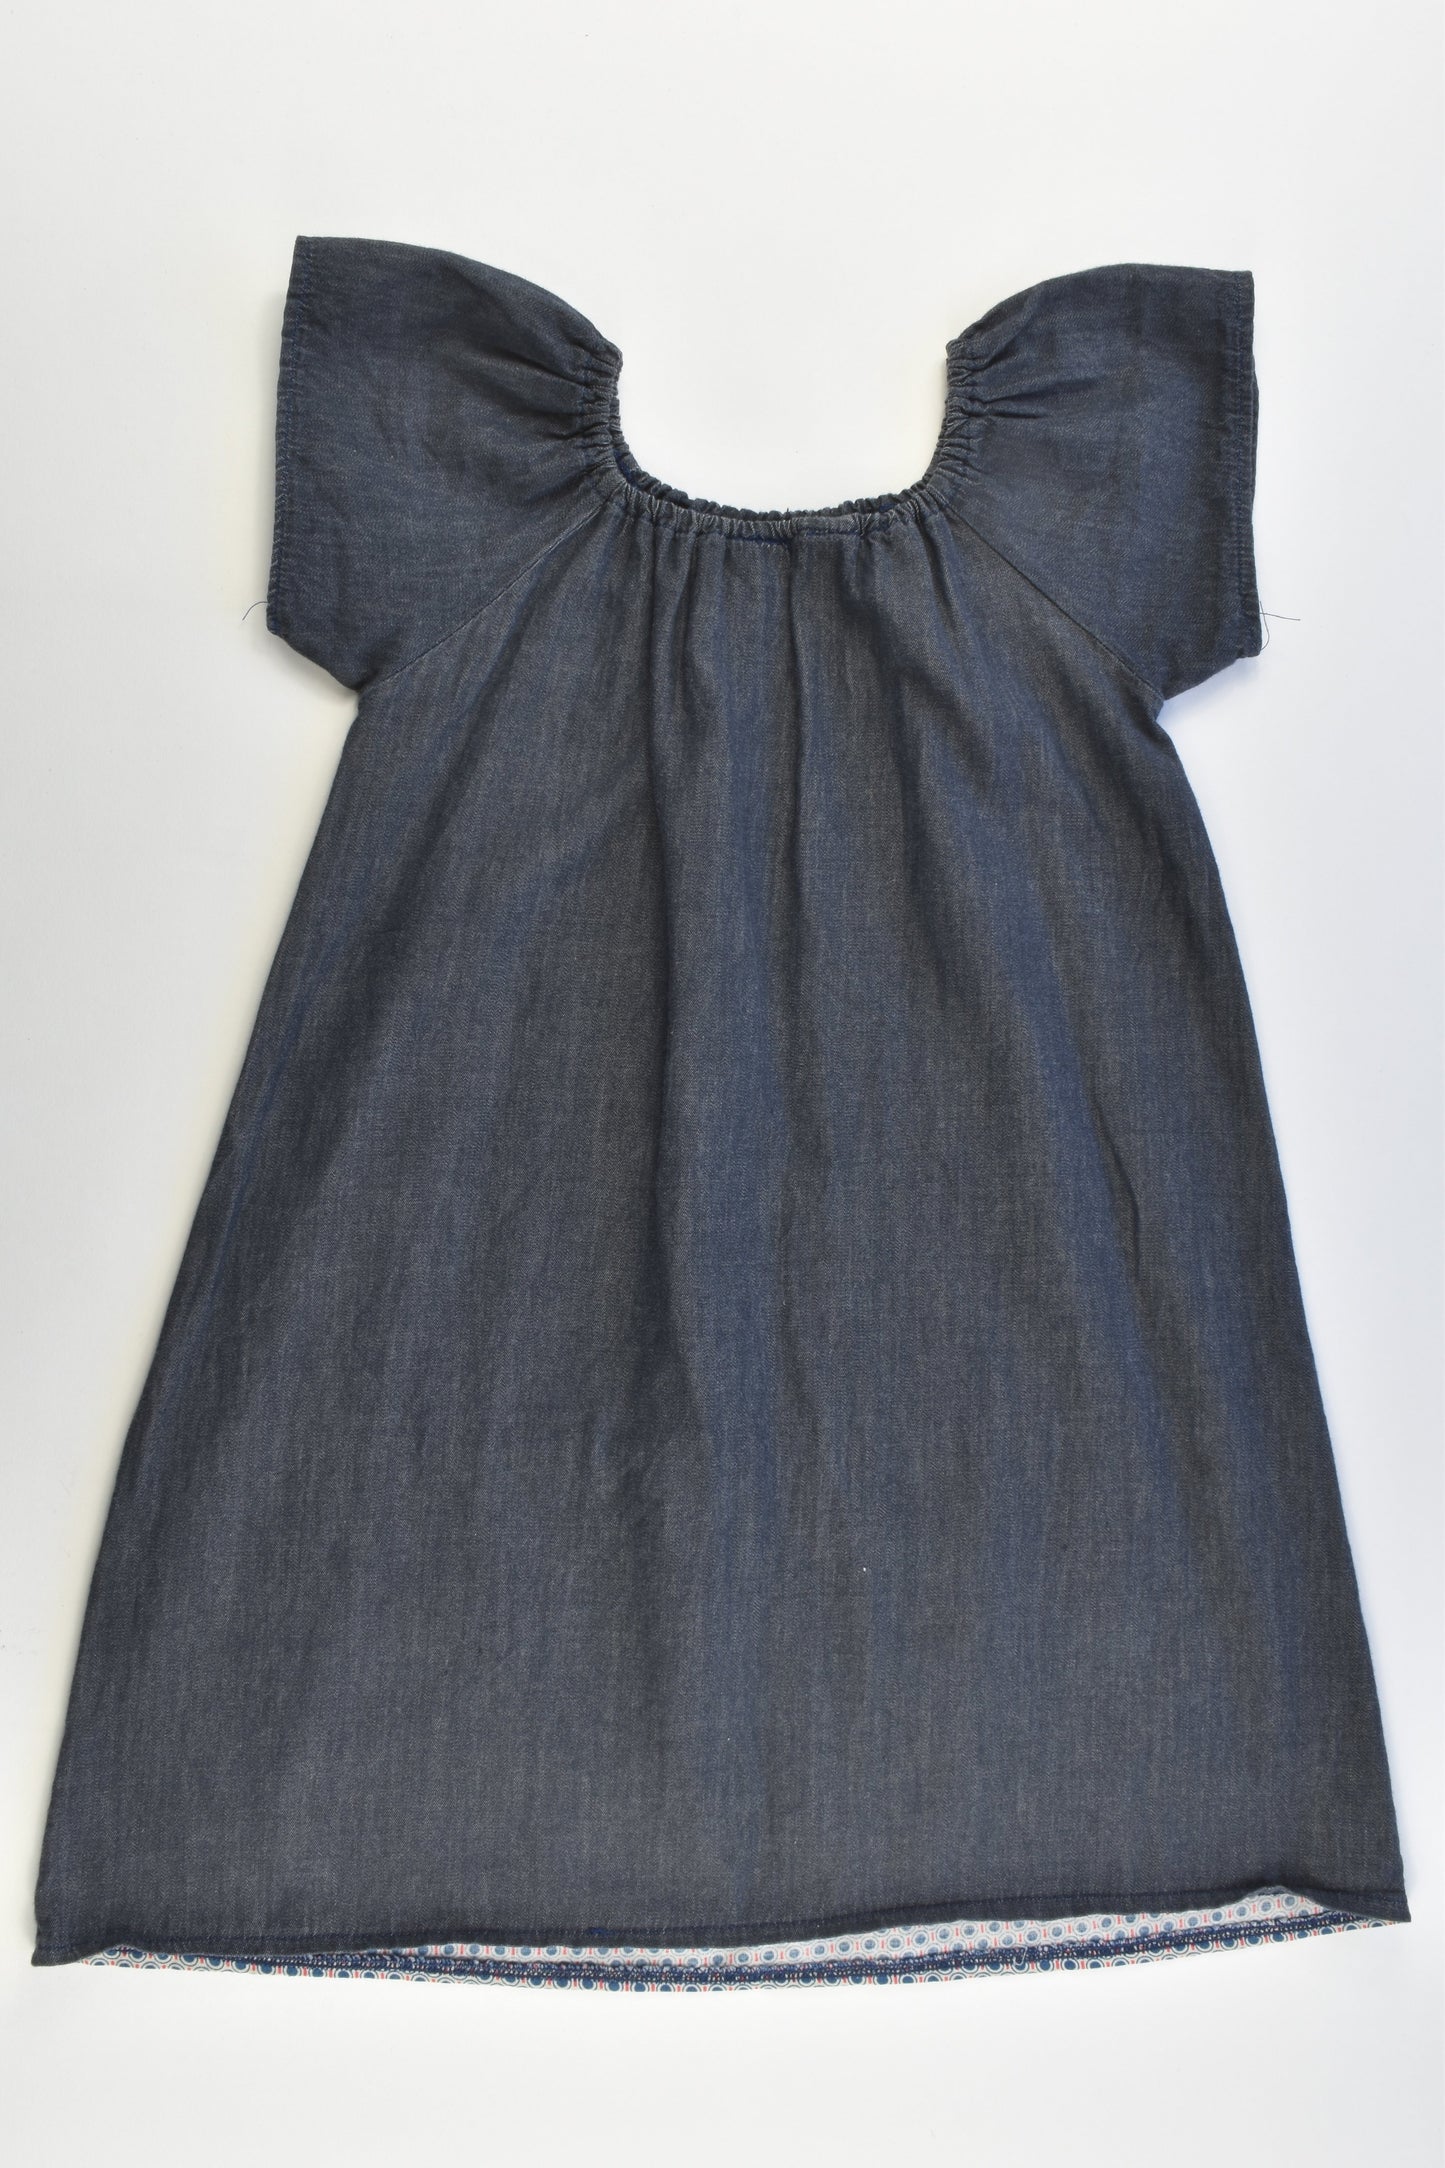 Handmade (?) Size 3 Lightweight Denim Dress